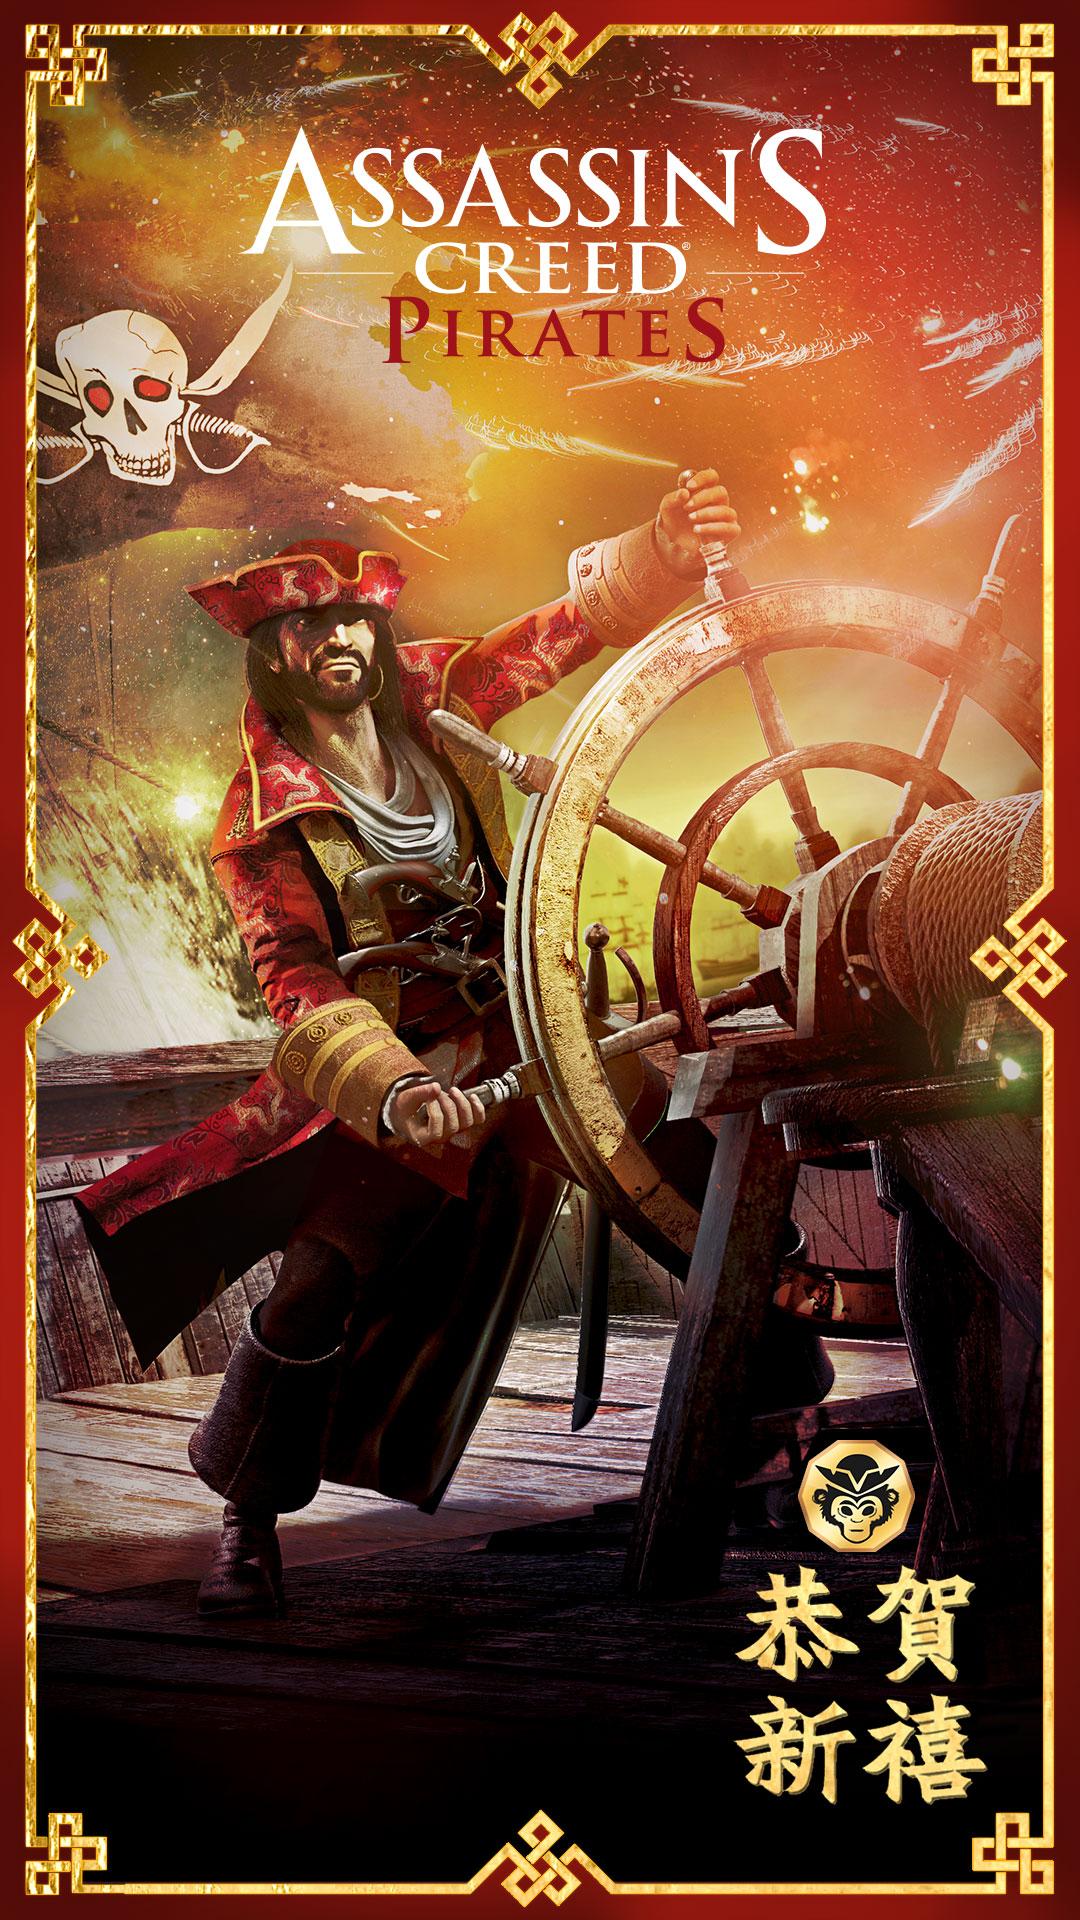 دانلود Assassin’s Creed Pirates 2.9.1 – بازی دزدان دریایی اندروید + مود + دیتا